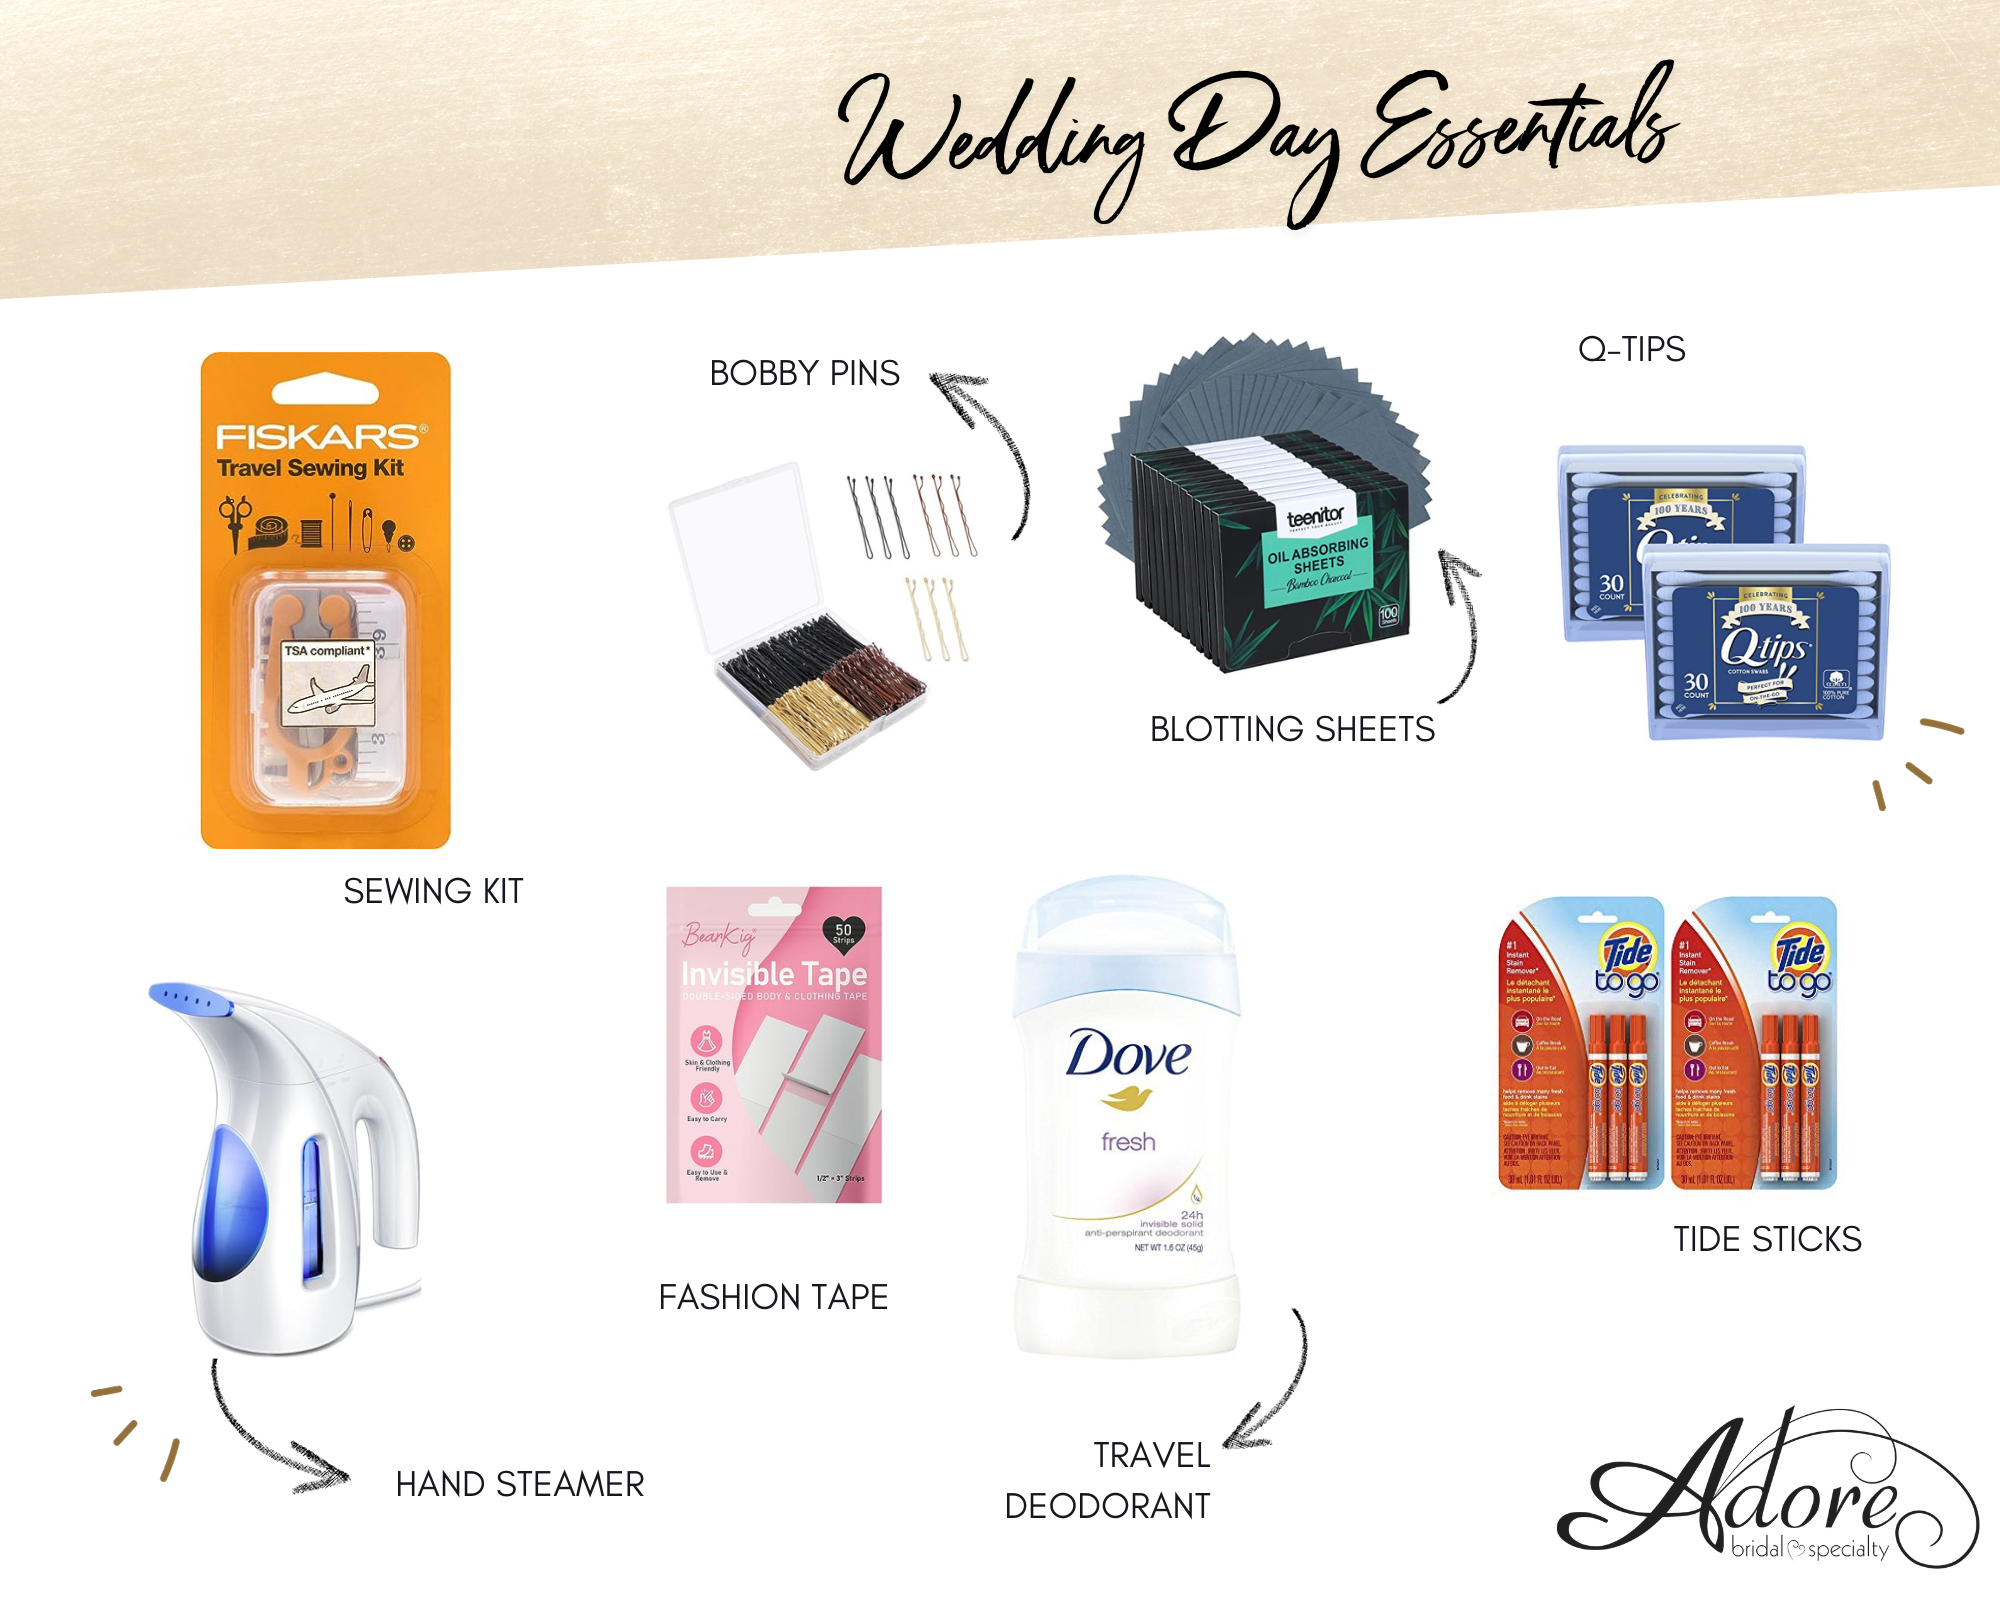 Wedding Day Essentials. Desktop Image